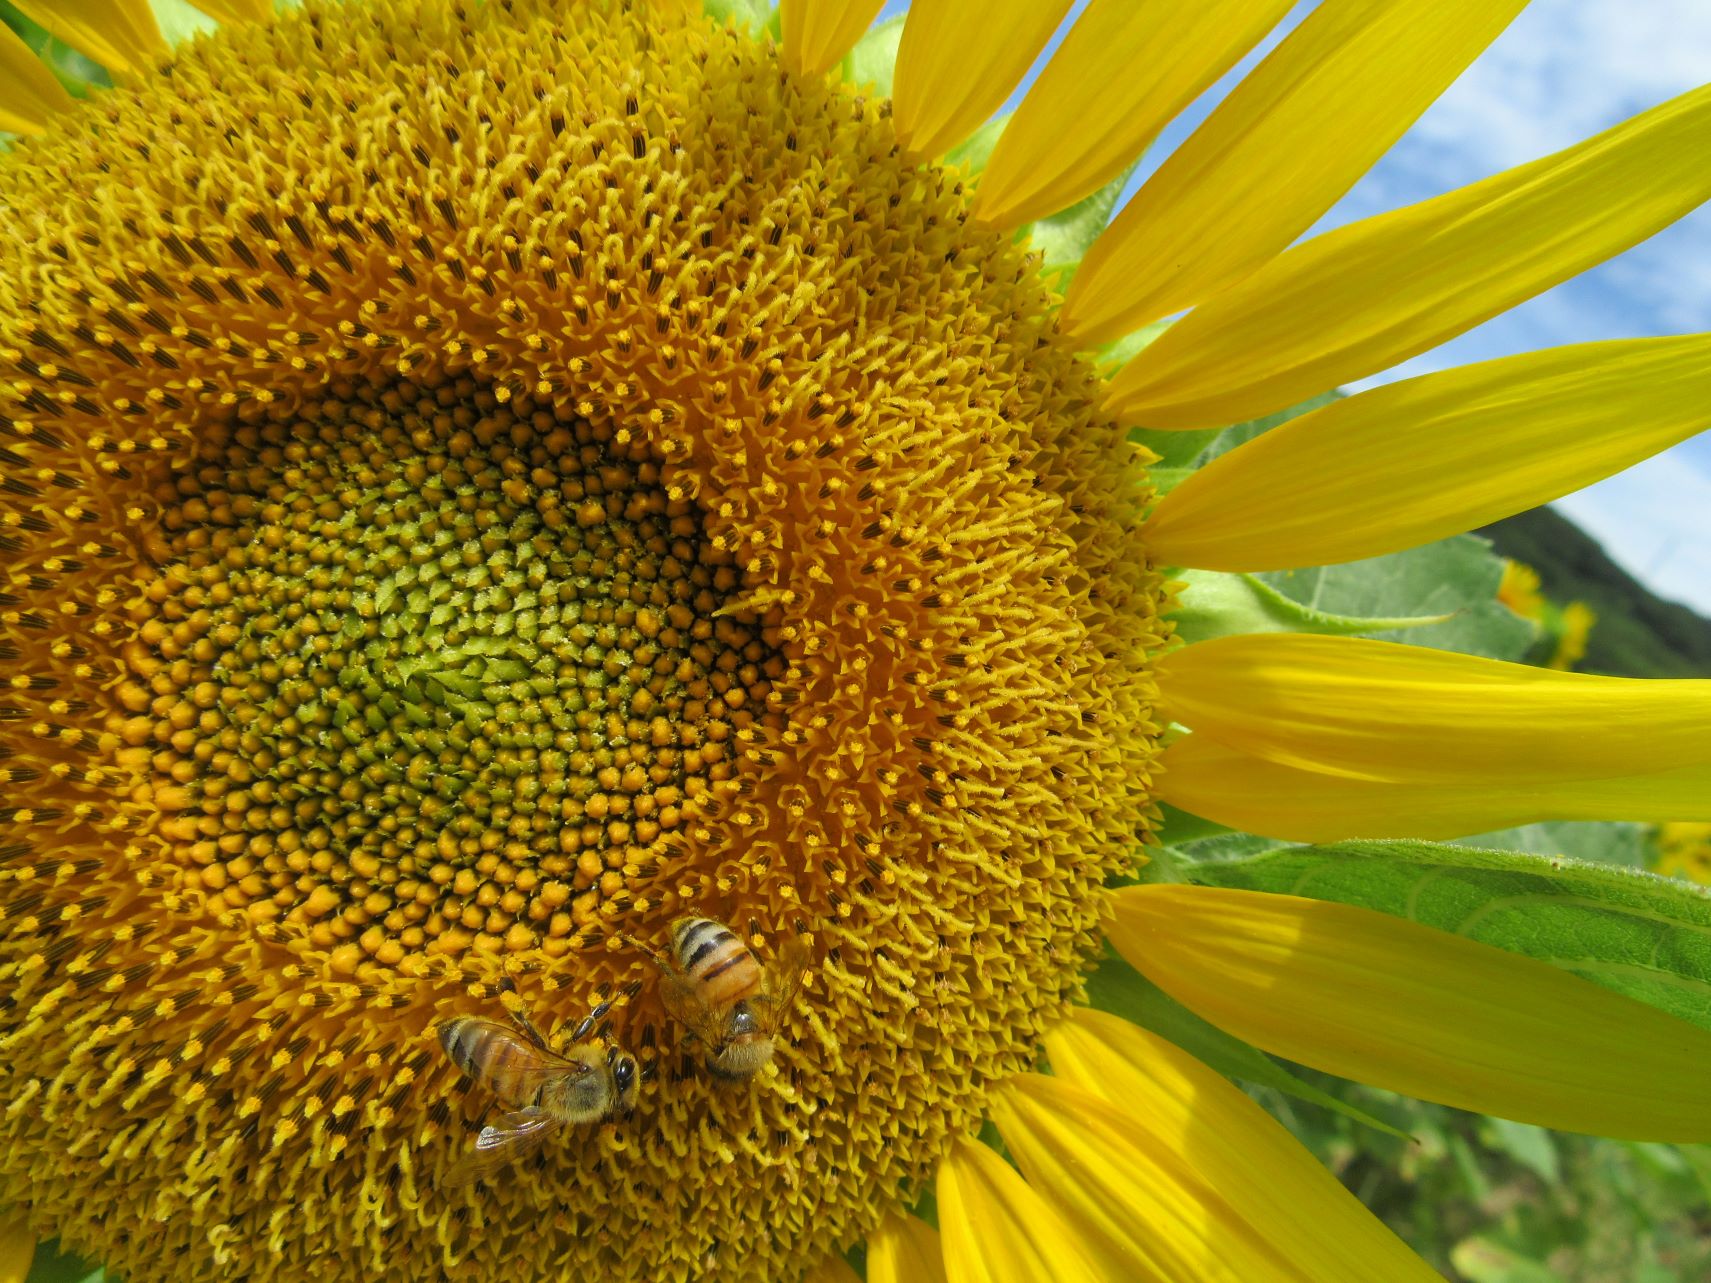 仲良さそうにひまわりの花にとまっている2匹のミツバチ。